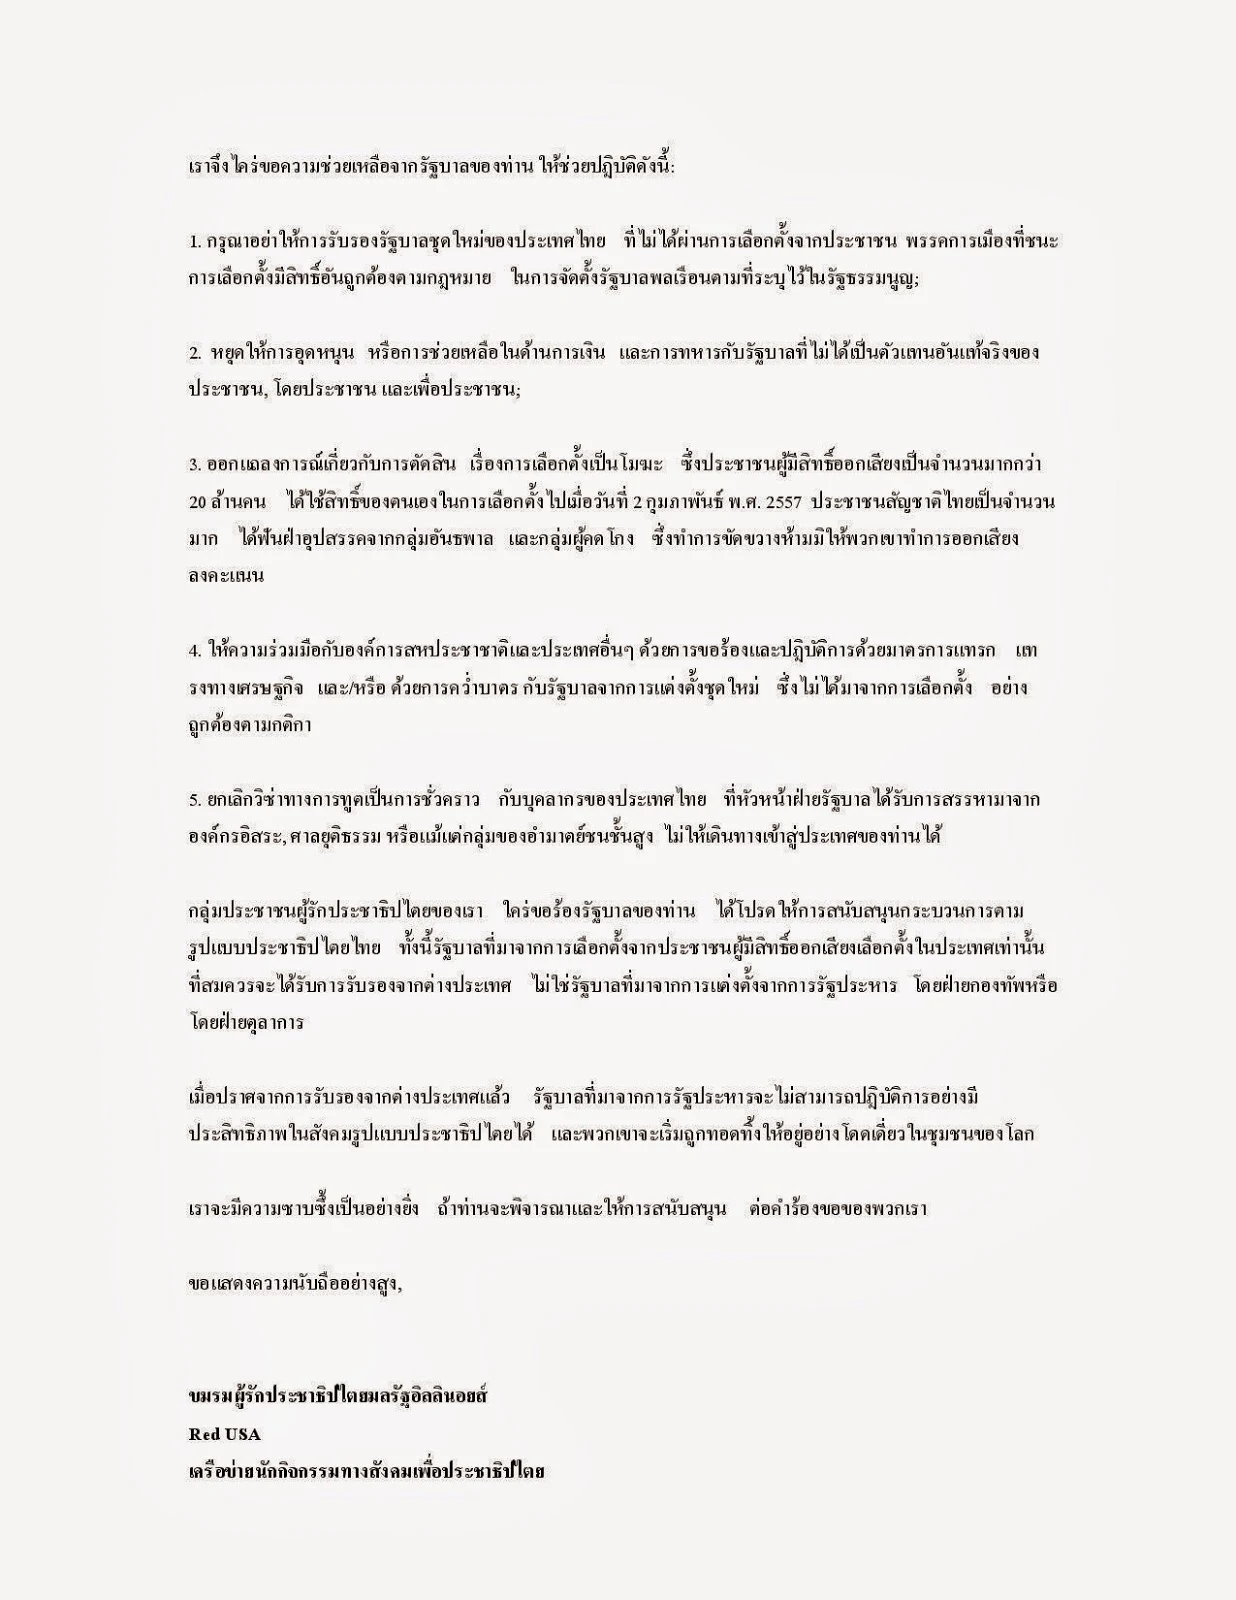 จดหมายฉบับภาษาไทย (ฉบับแปล): 